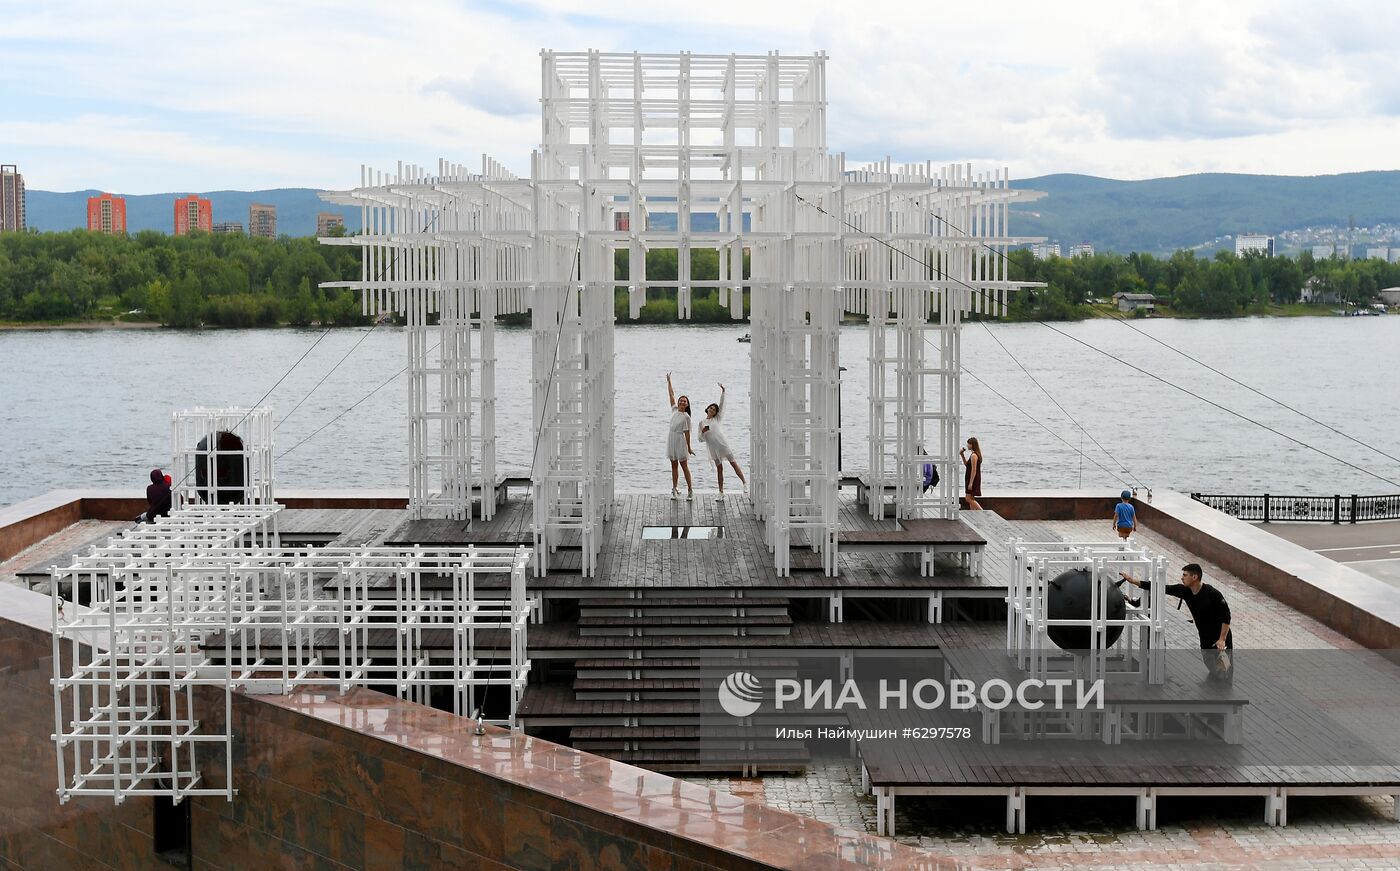 Открытие нового арт-объекта в Красноярске